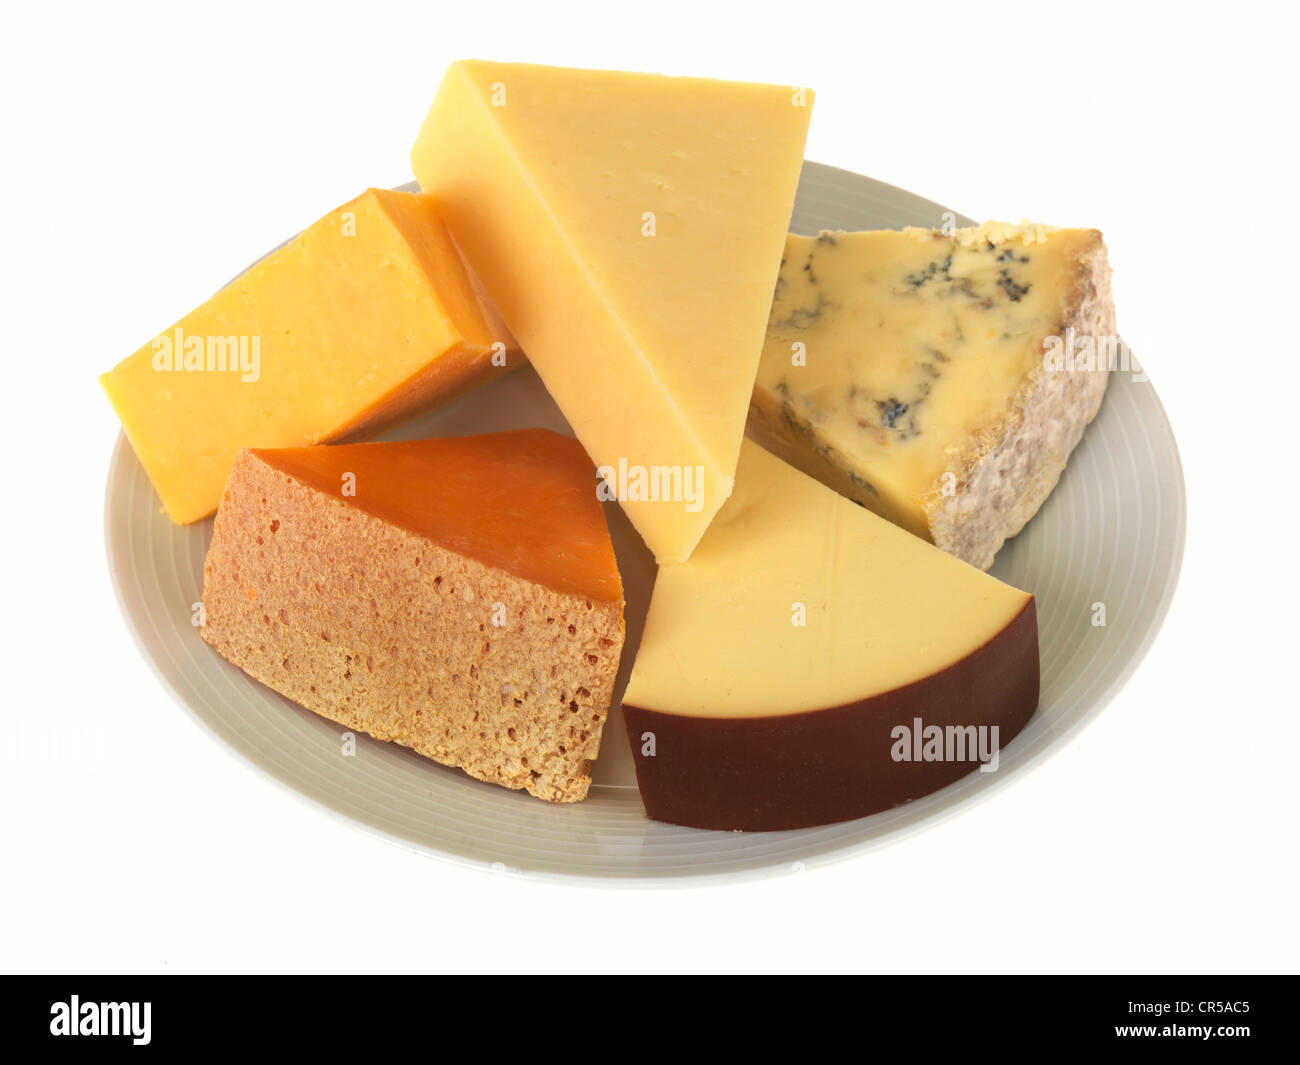 Platte von Frischer gemischter Dessert Käse bereit zu essen, isoliert gegen einen weißen Hintergrund mit Keine Personen Stockfoto